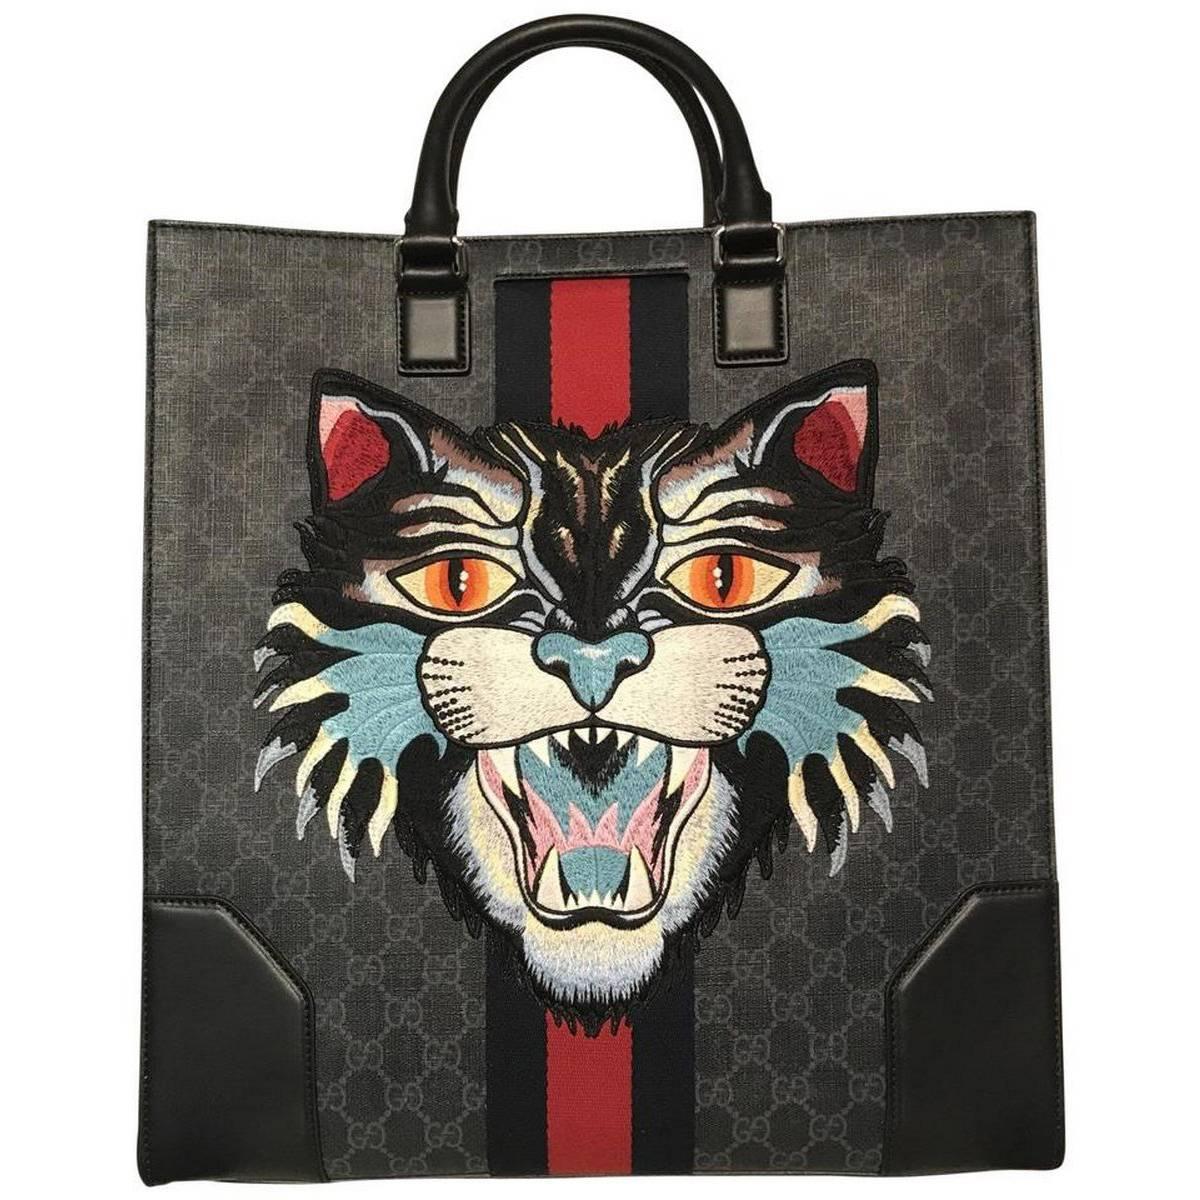 Gucci Black Canvas GG Supreme Tote Bag